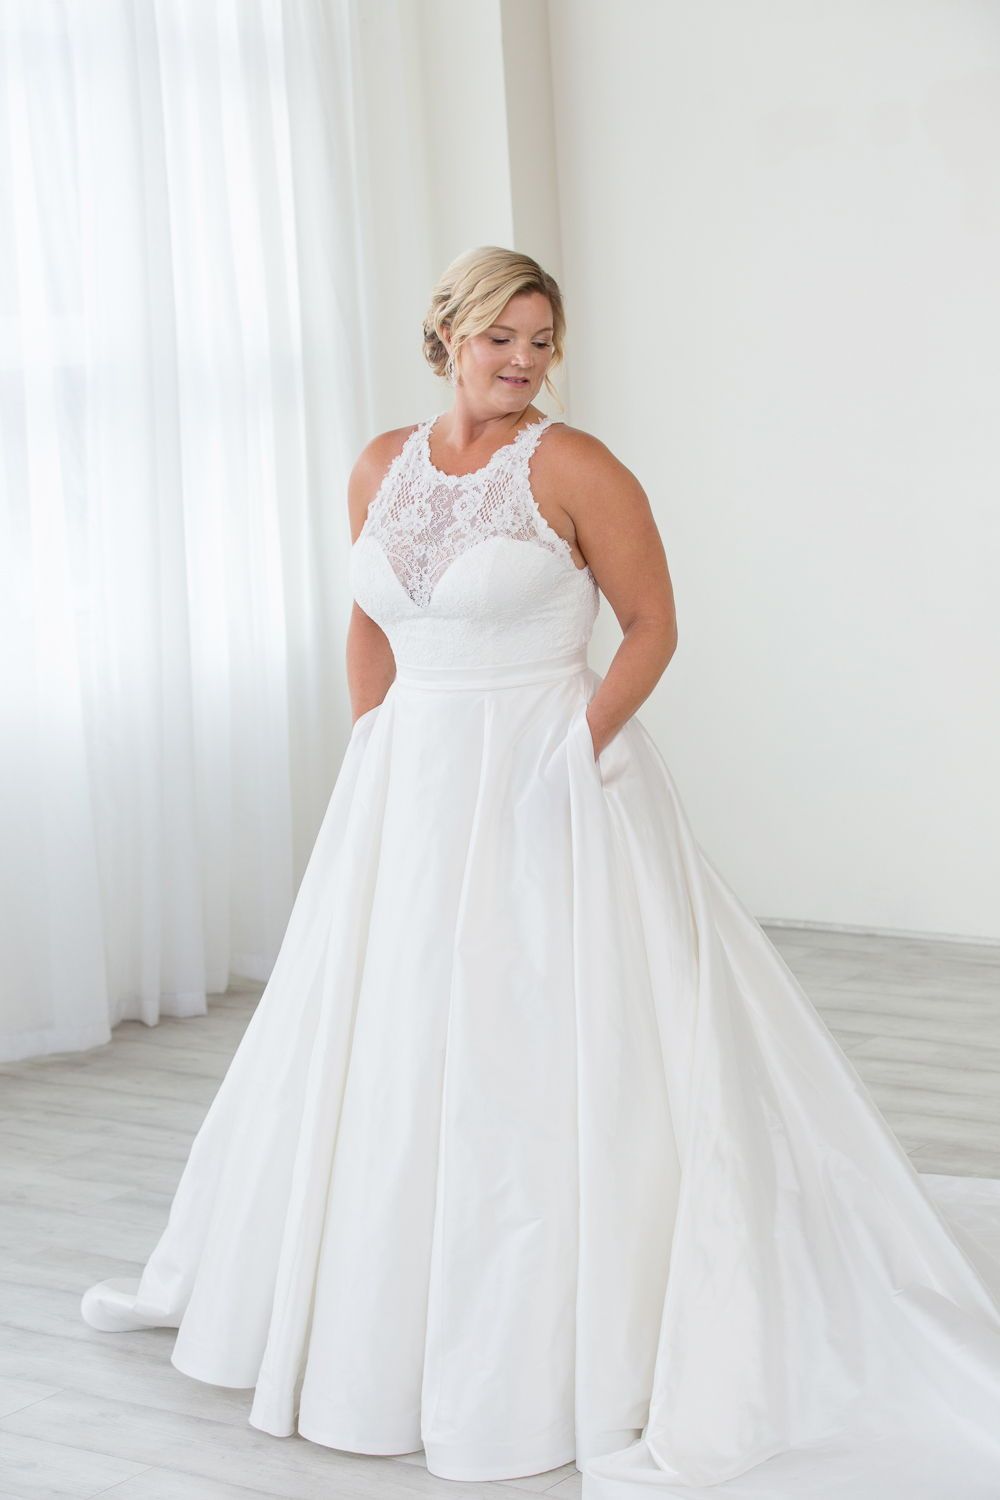 42 Plus Size Wedding Dresses To Shine Weddinginclude Wedding Ideas Inspiration Blog Page 2